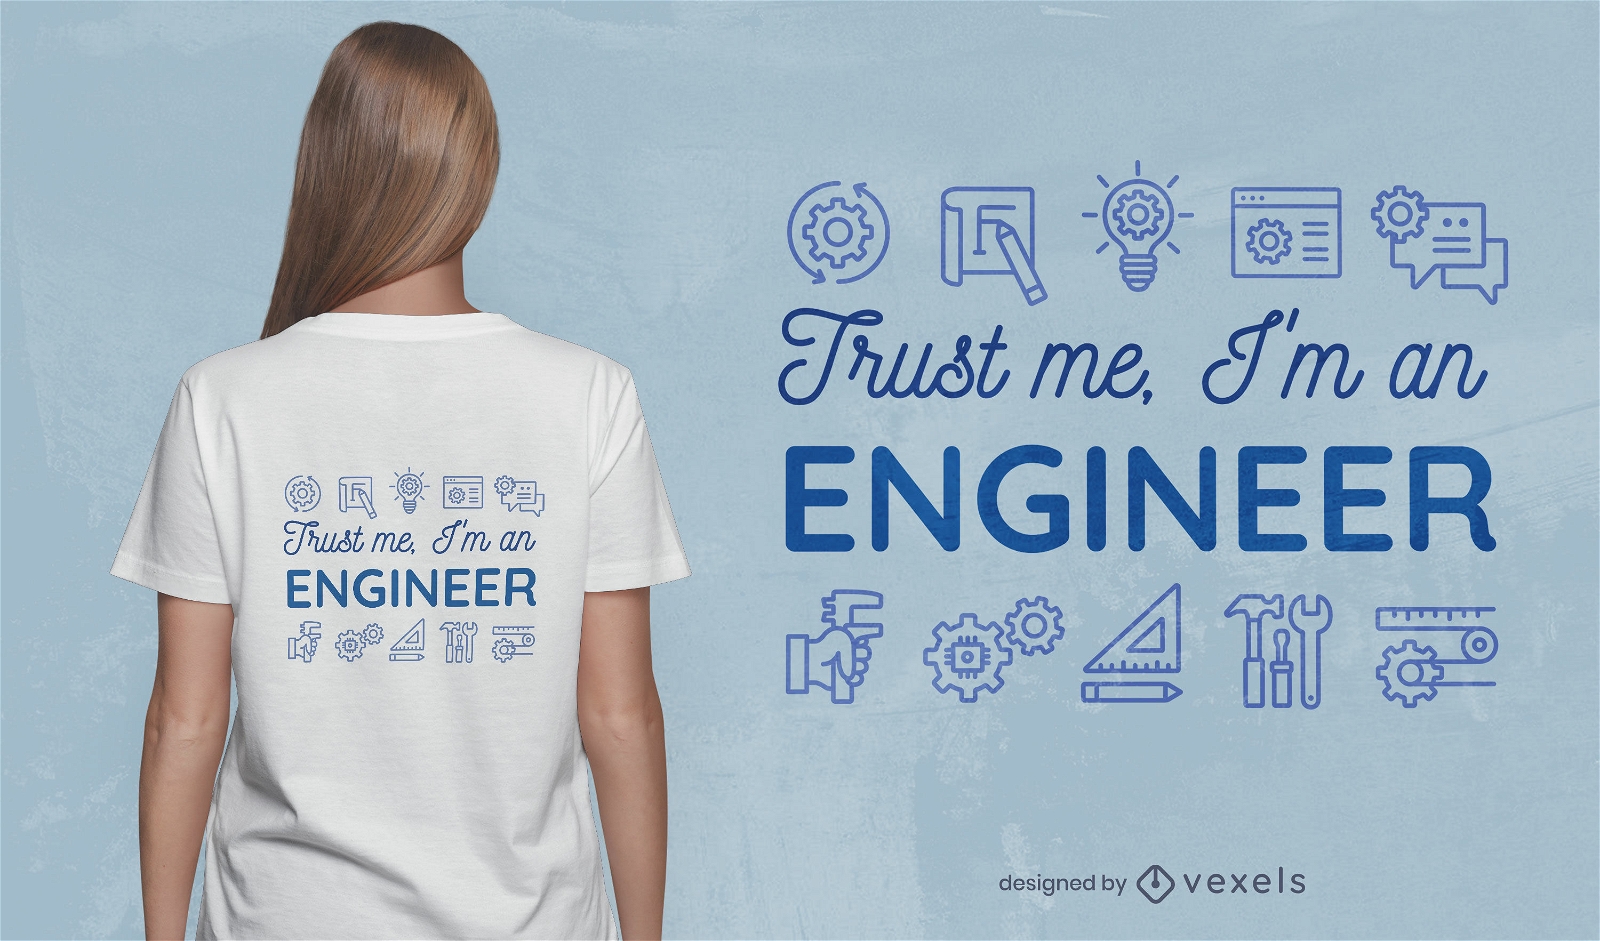 Dise?o de camiseta de cita y elementos de ingeniero.